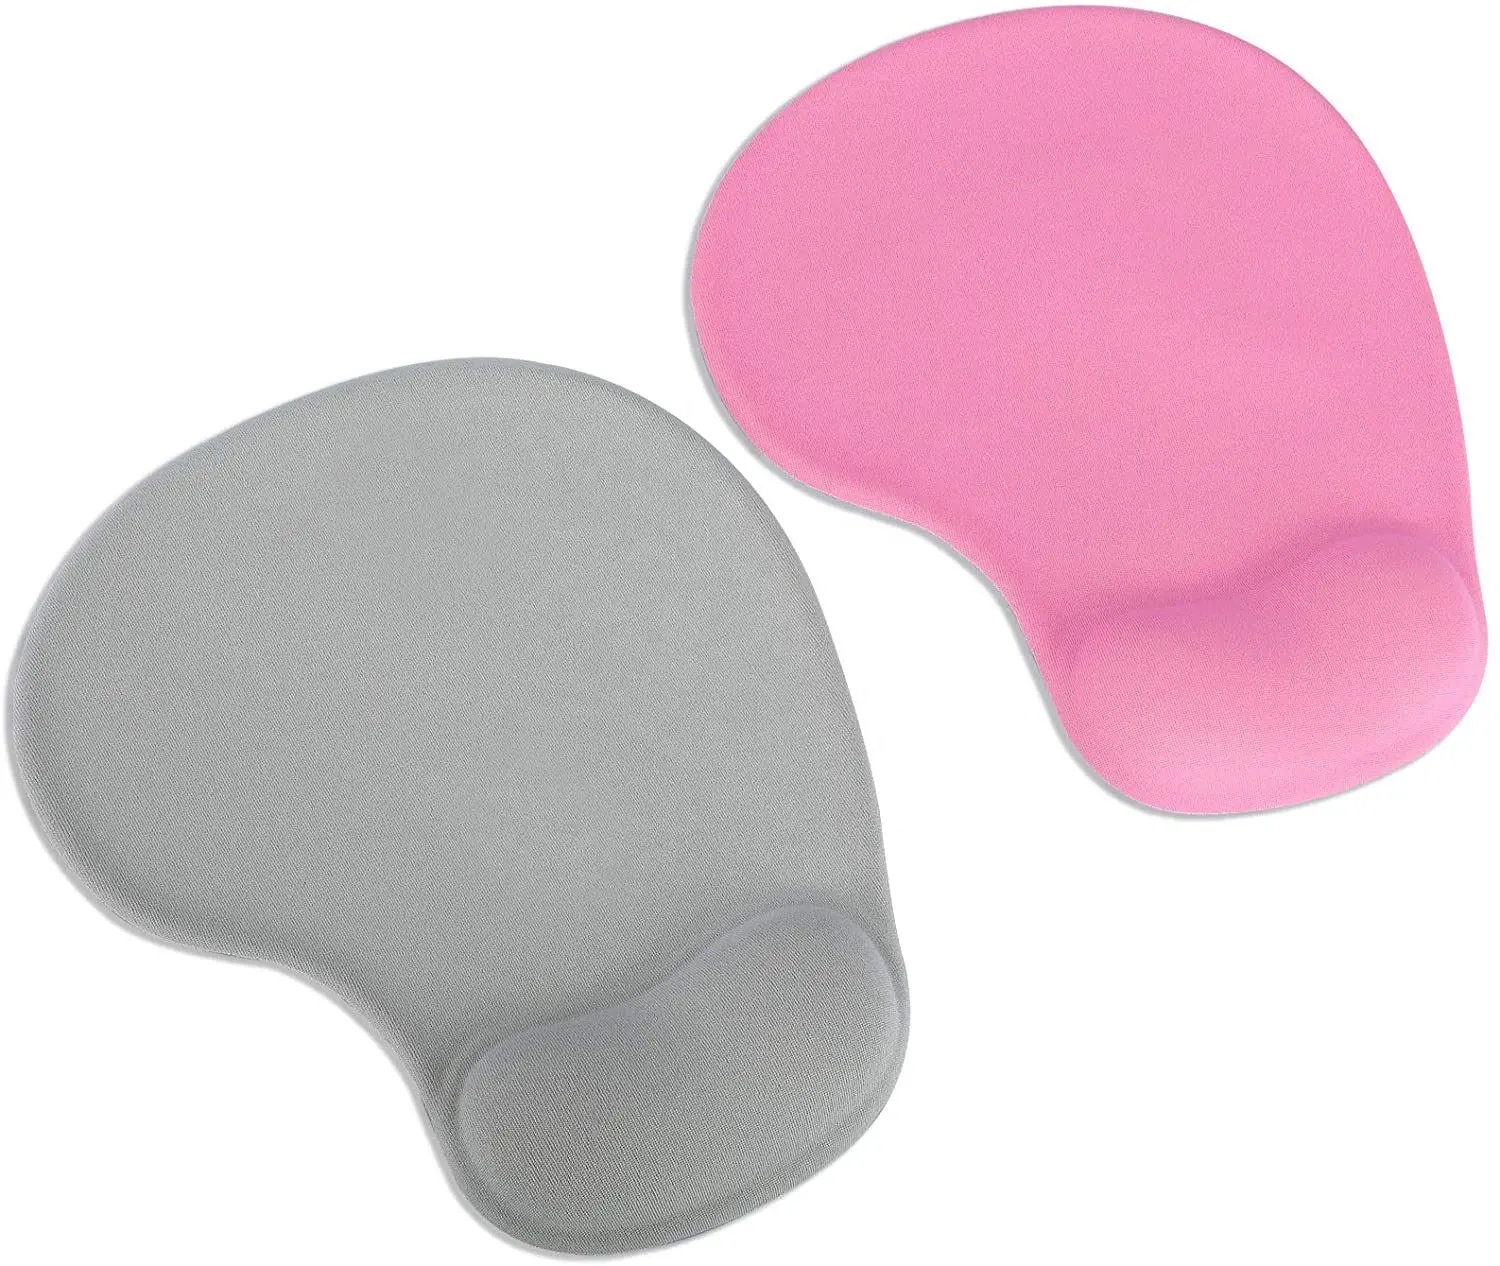 Promotionele Ergonomische Afdrukken Mousepad Met Polssteun Beschermen Uw Polsen Gel Wrist Rest Mouse Pad